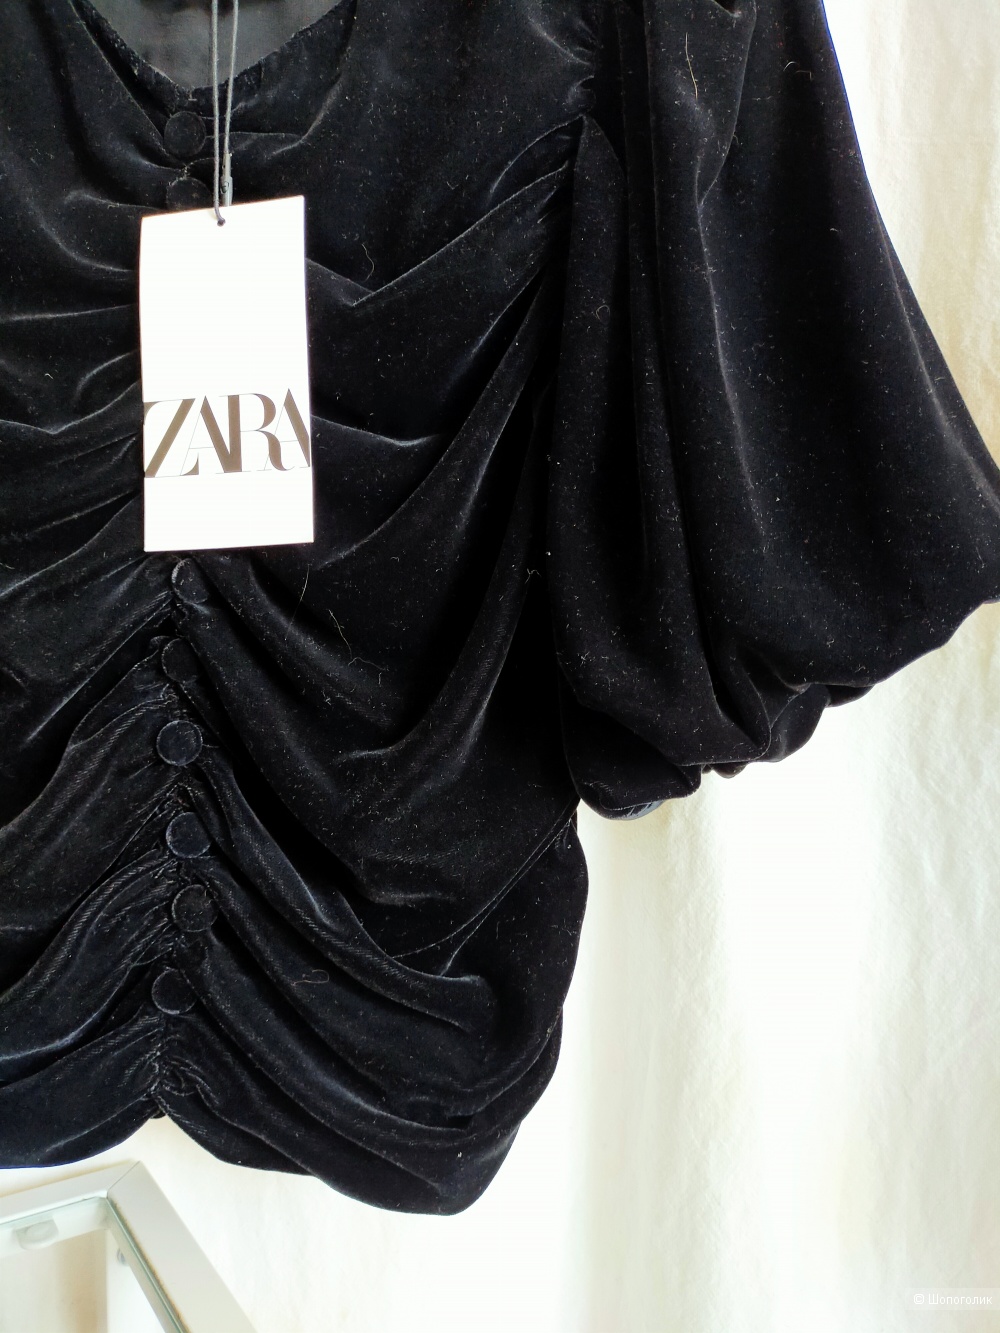 Рубашка Zara размер XS